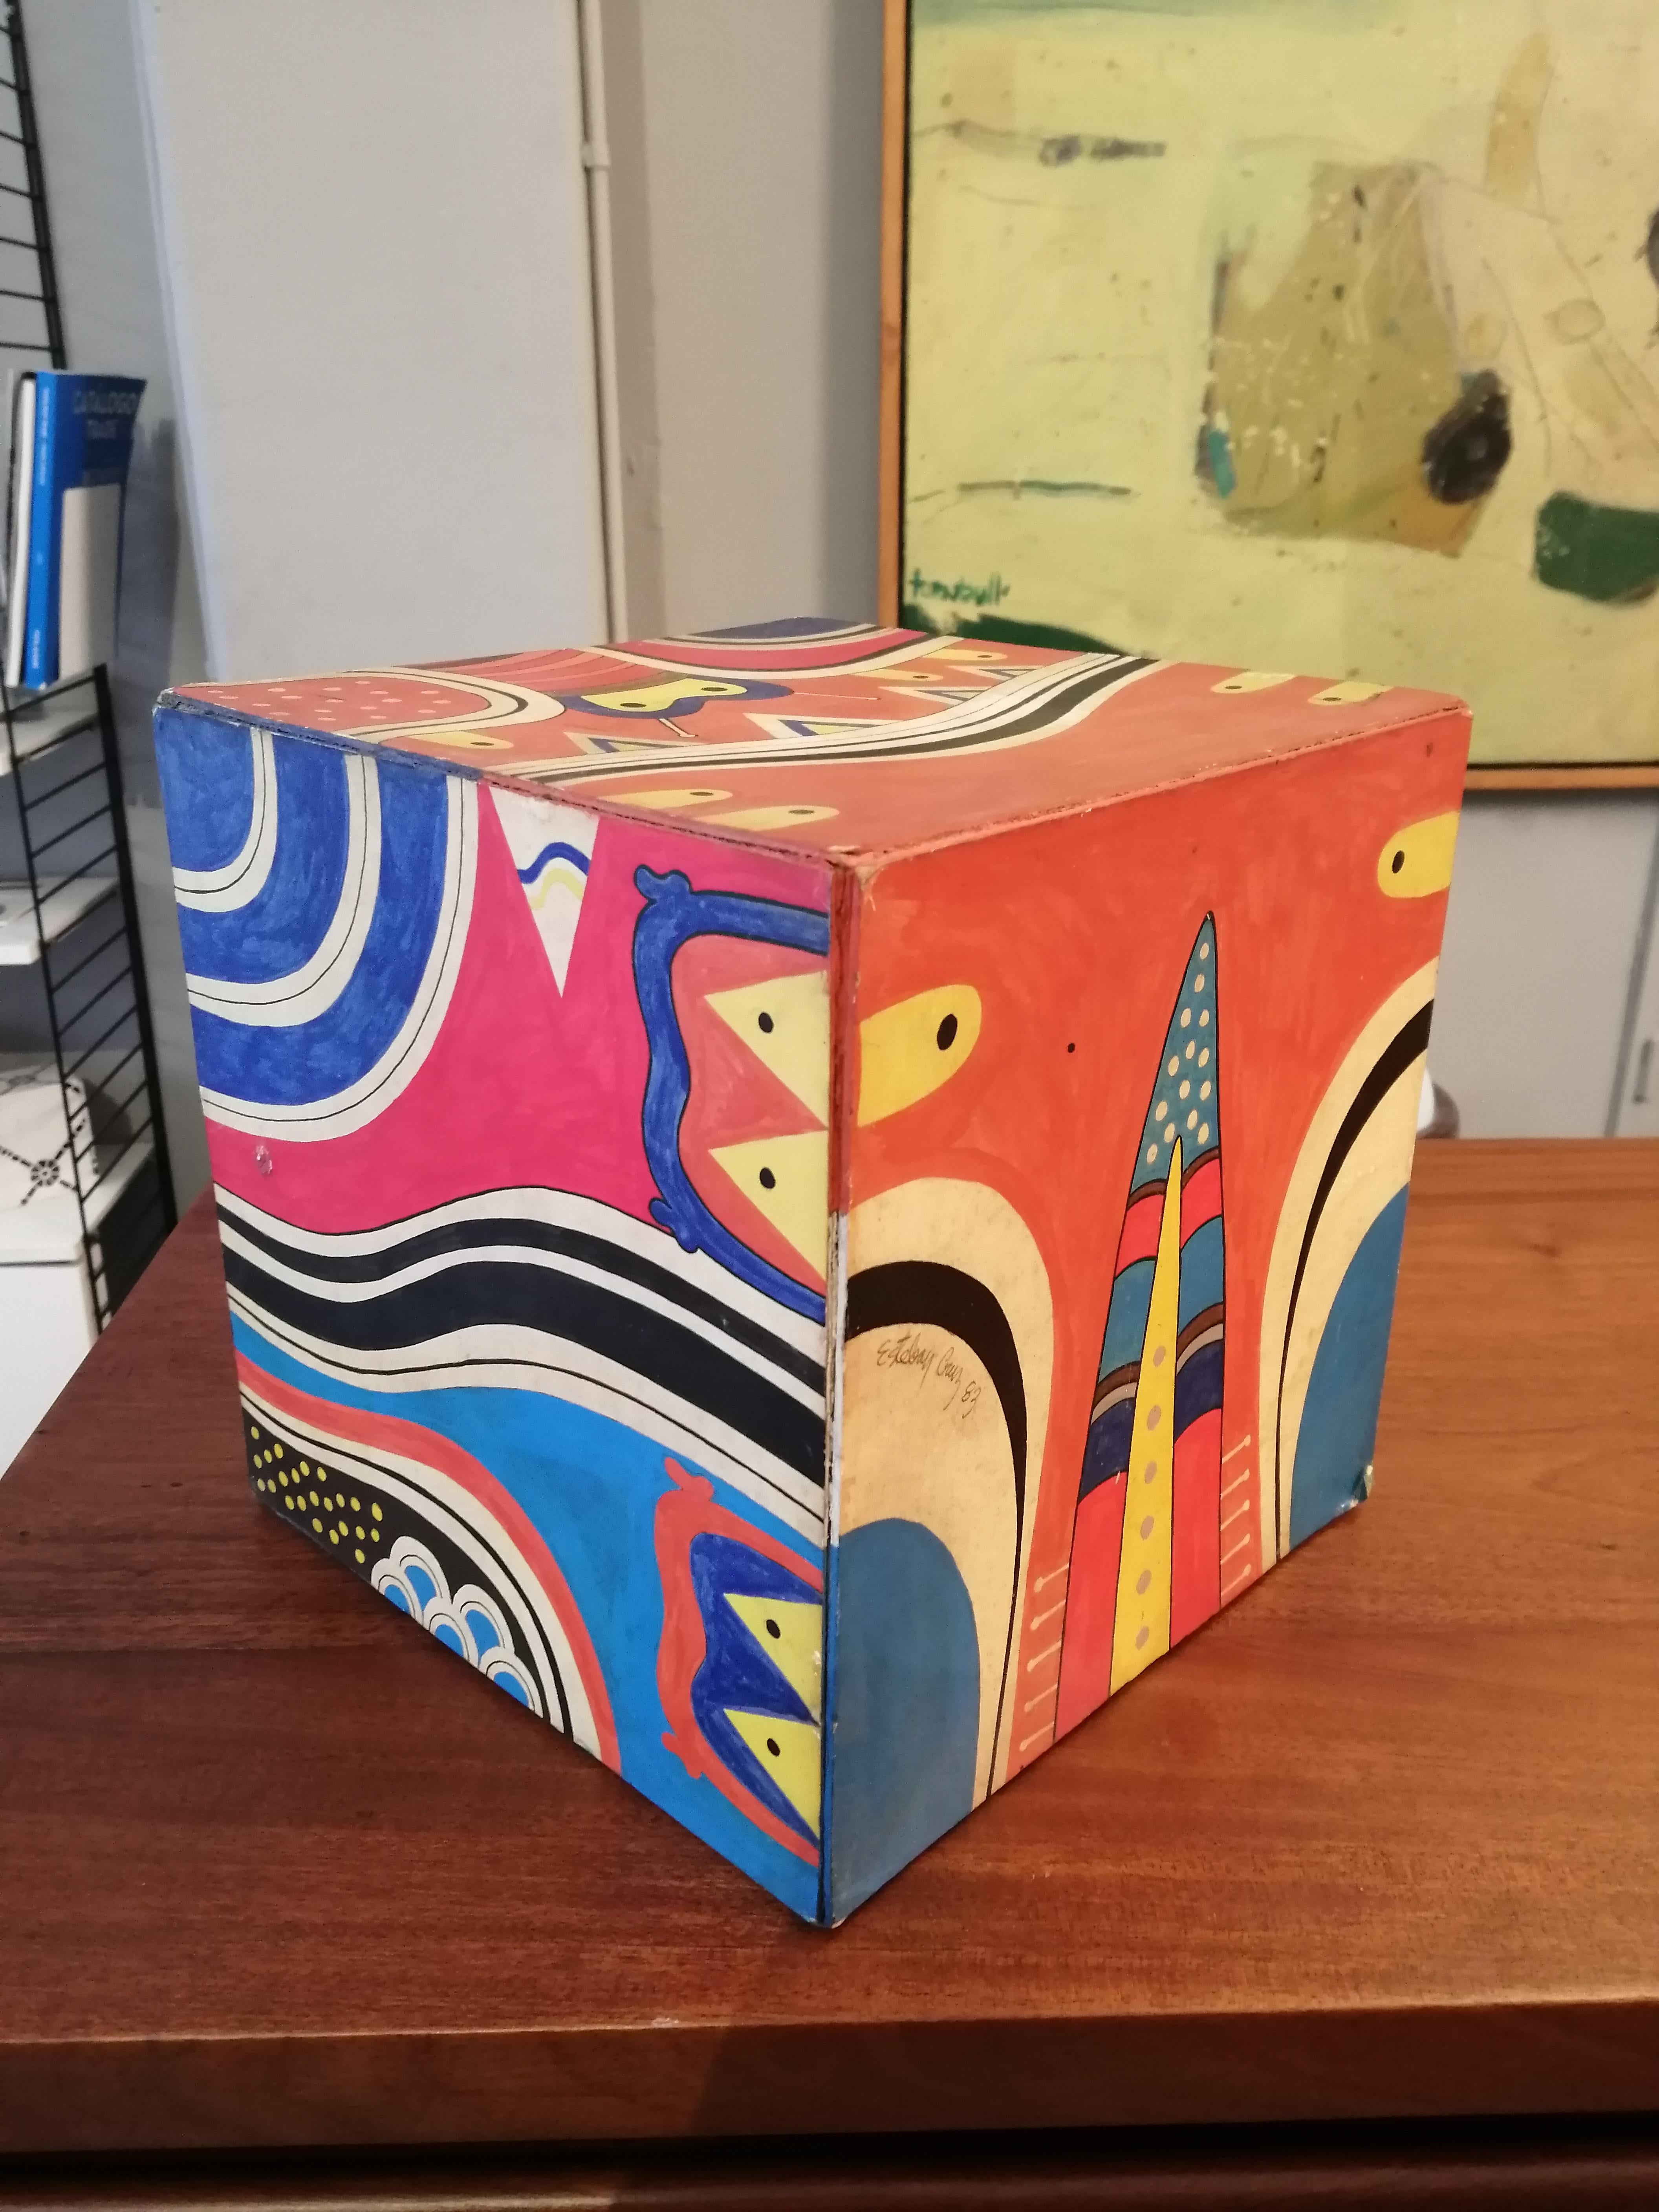 Acryl auf Karton Würfelgemälde des mexikanischen Künstlers Esteban Cruz. Das Gemälde zeigt verschiedene Formen von Maori und geometrischer Inspiration. Signiert und datiert 83. 

Esteban Cruz wurde 1935 in Orizaba, Veracruz, geboren und besuchte die